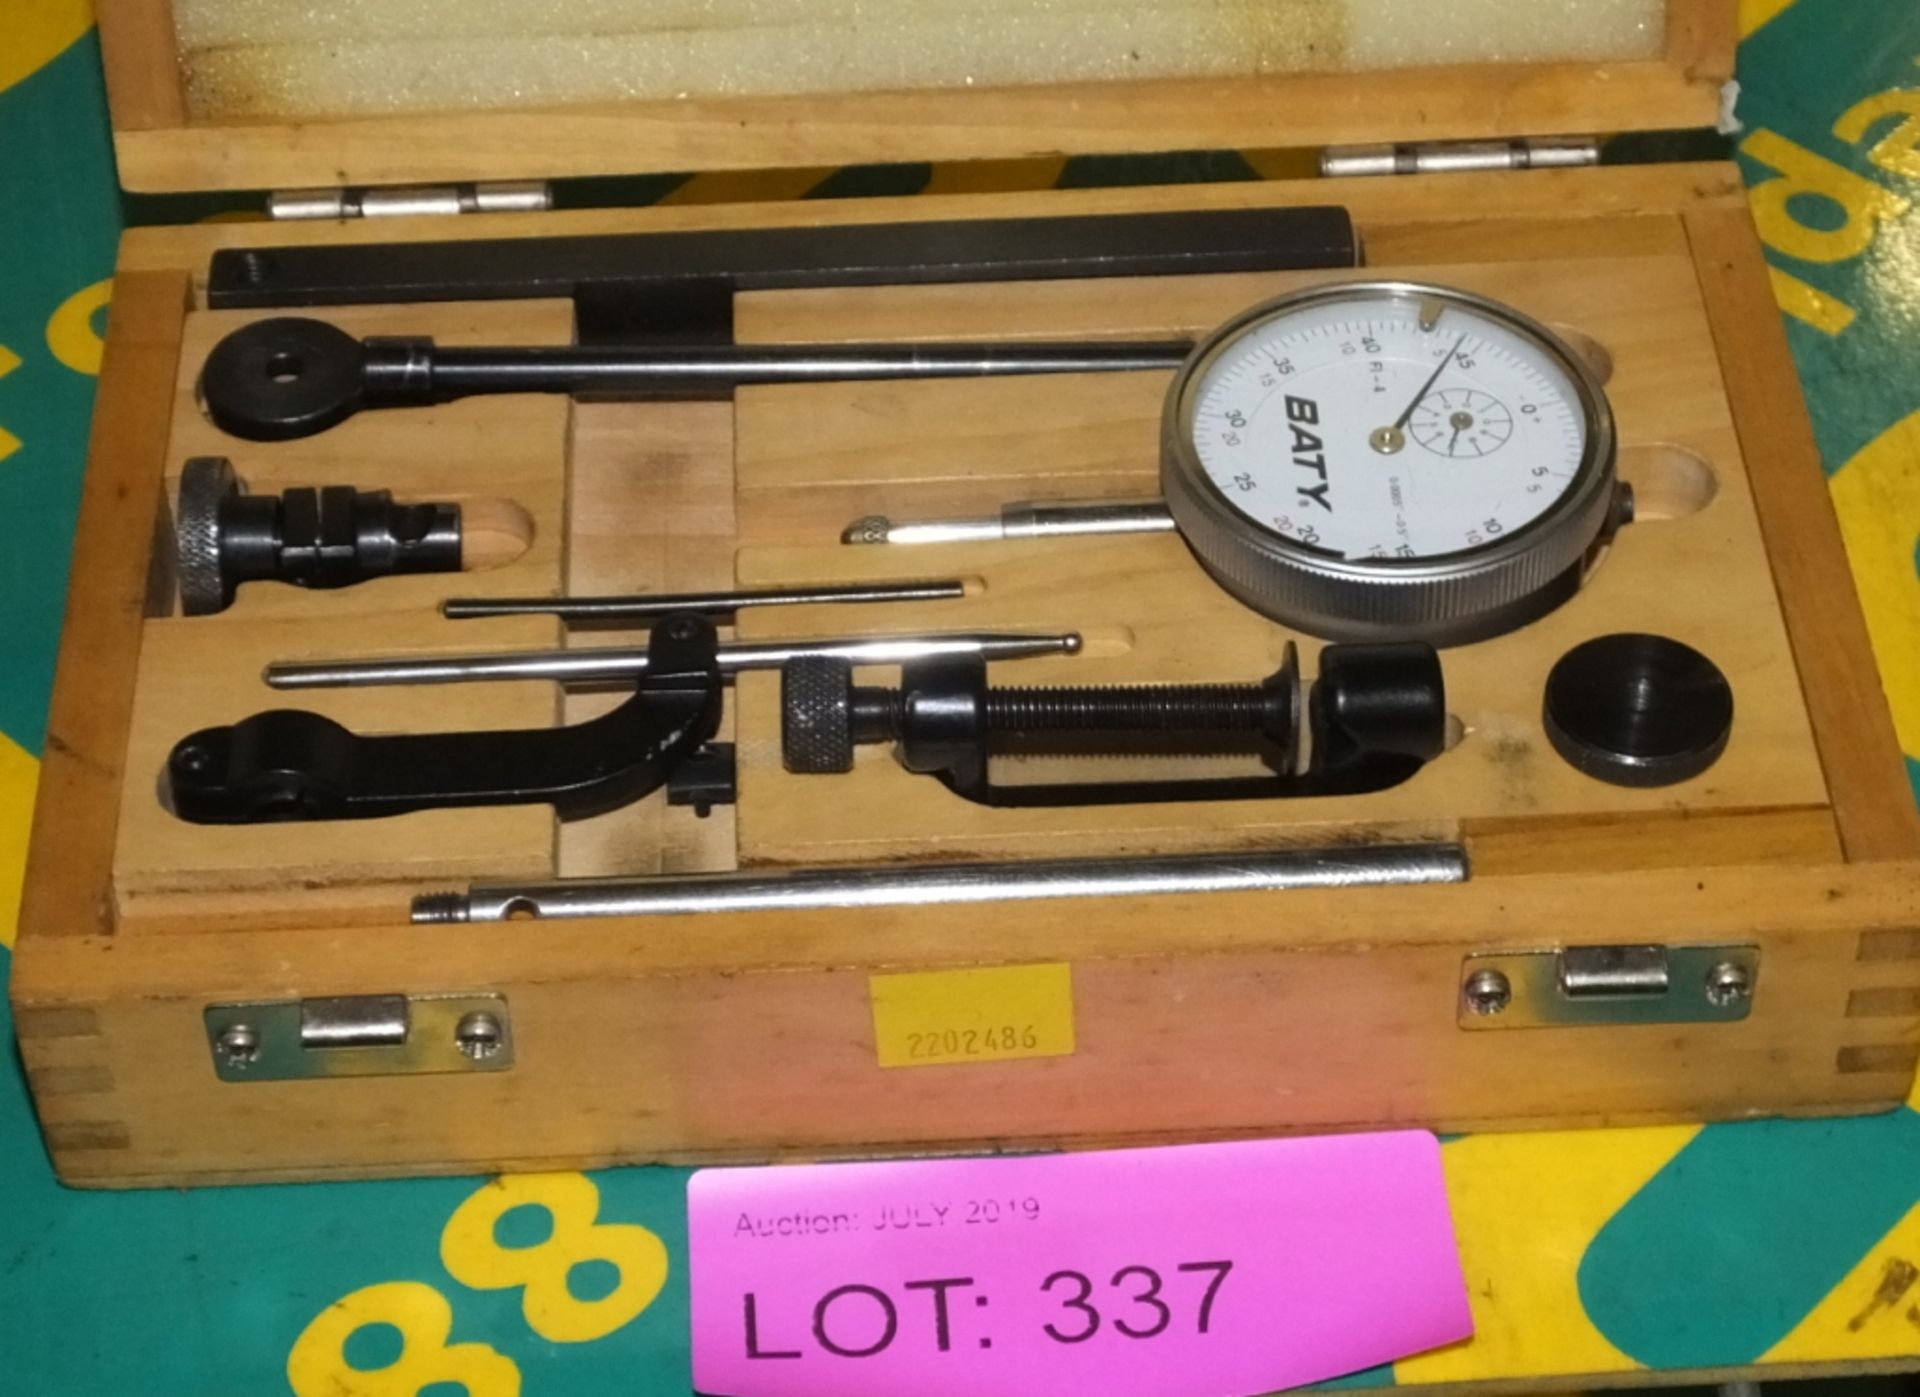 Baty Dial Gauge Set in wooden case